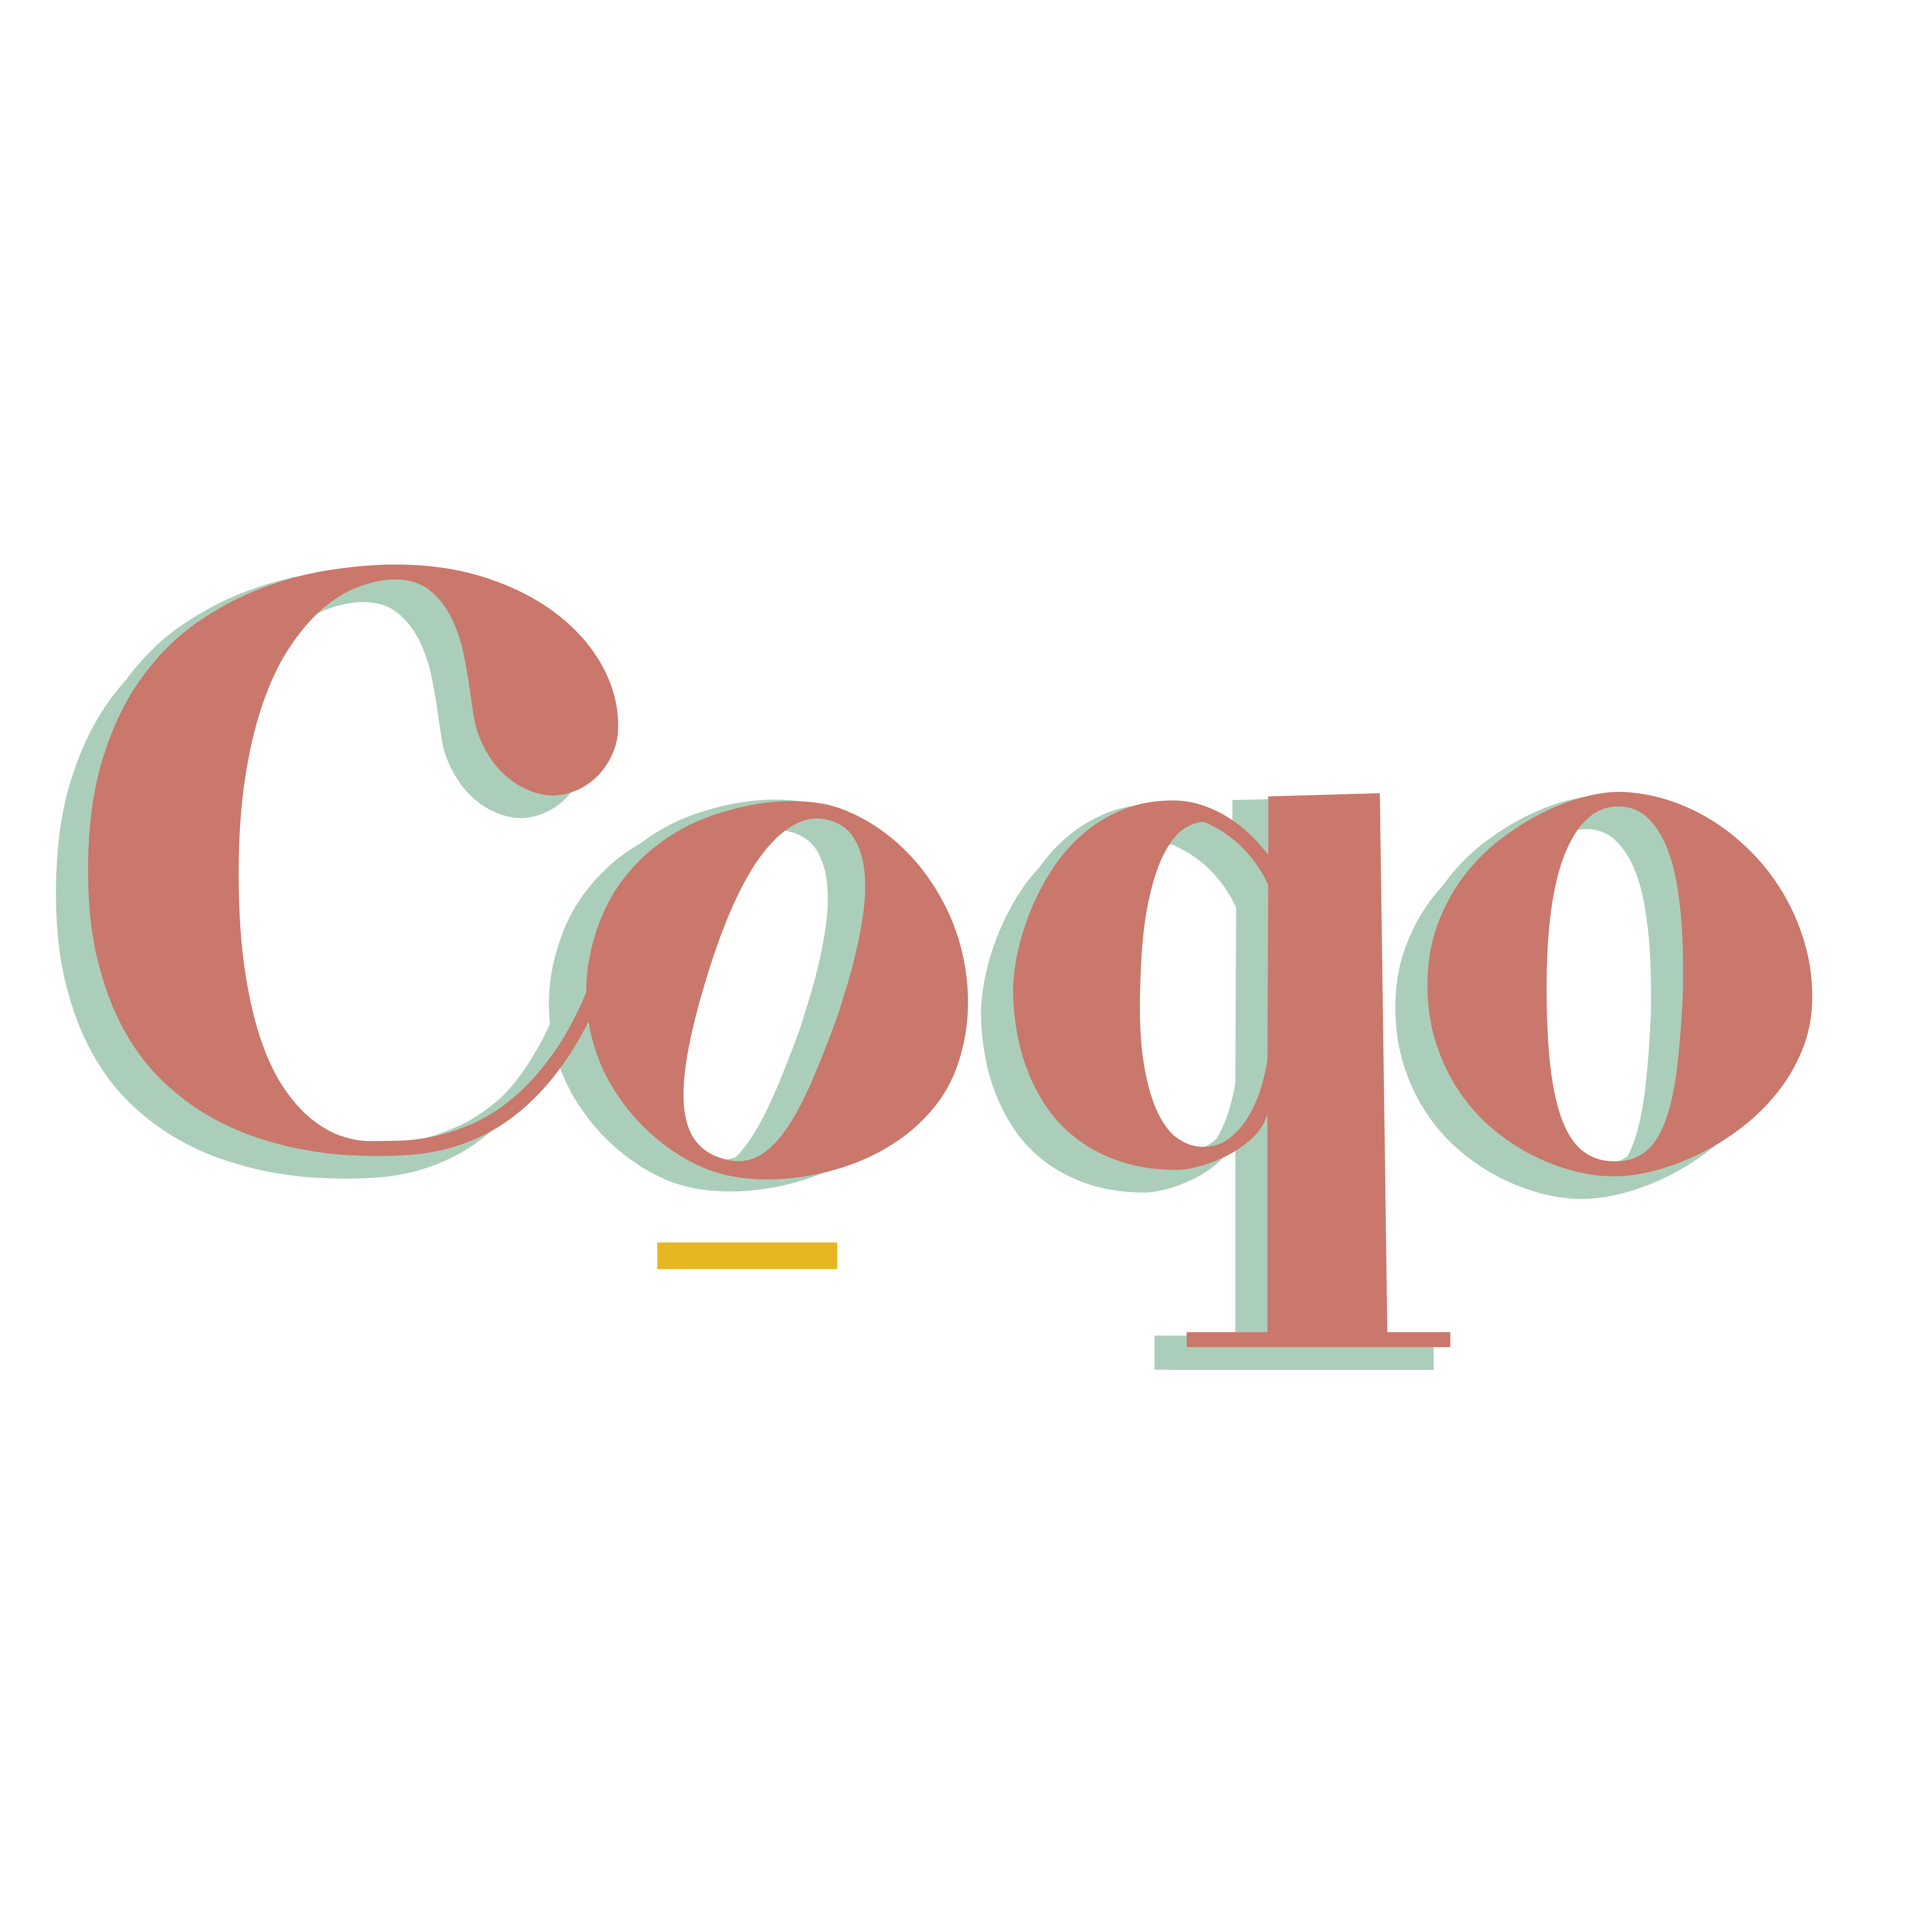 Coqo